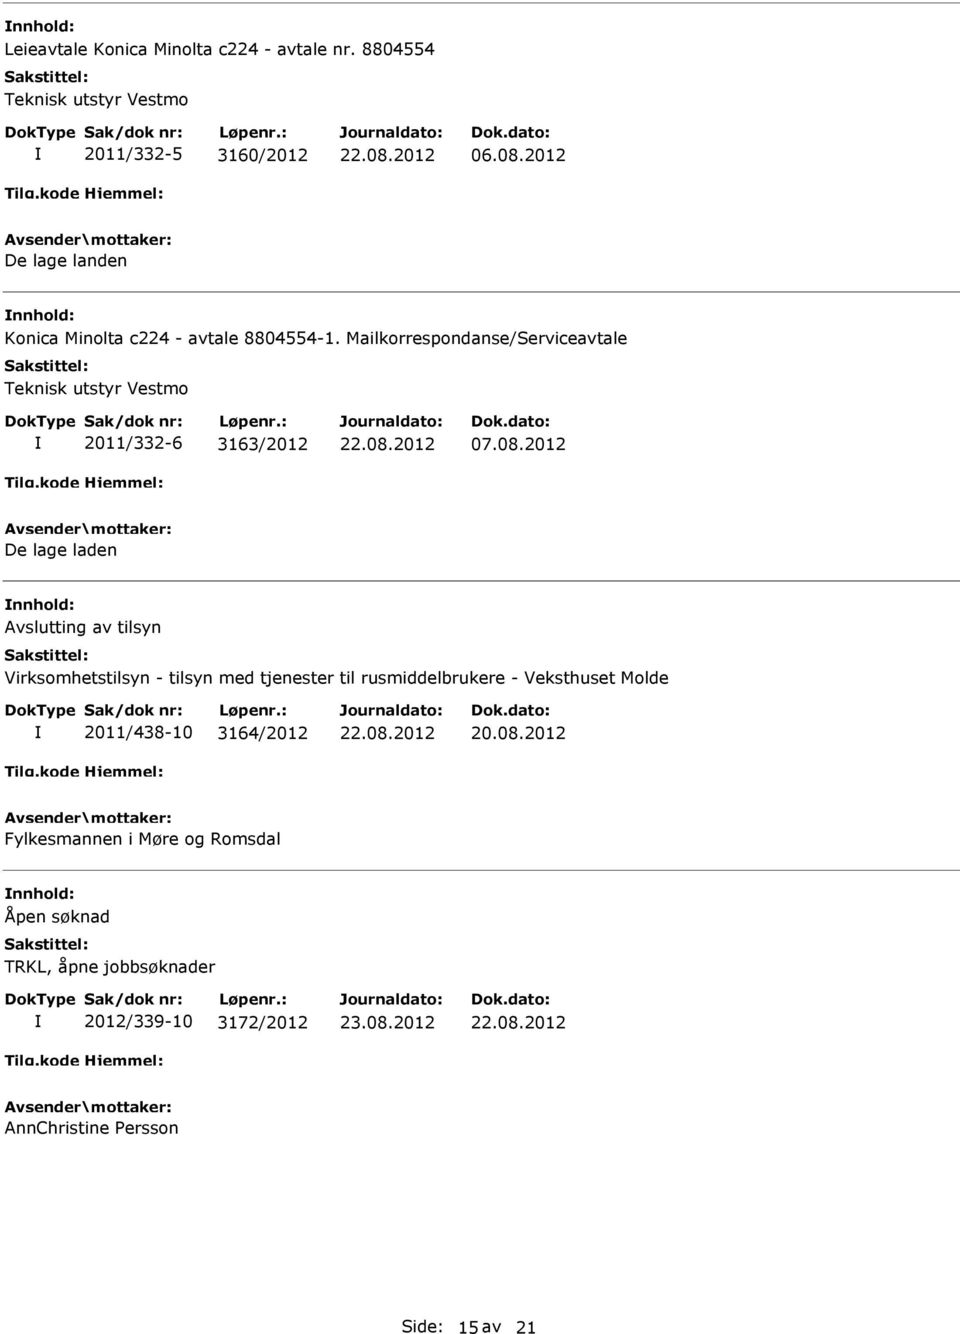 Mailkorrespondanse/Serviceavtale Teknisk utstyr Vestmo 2011/332-6 3163/2012 07.08.